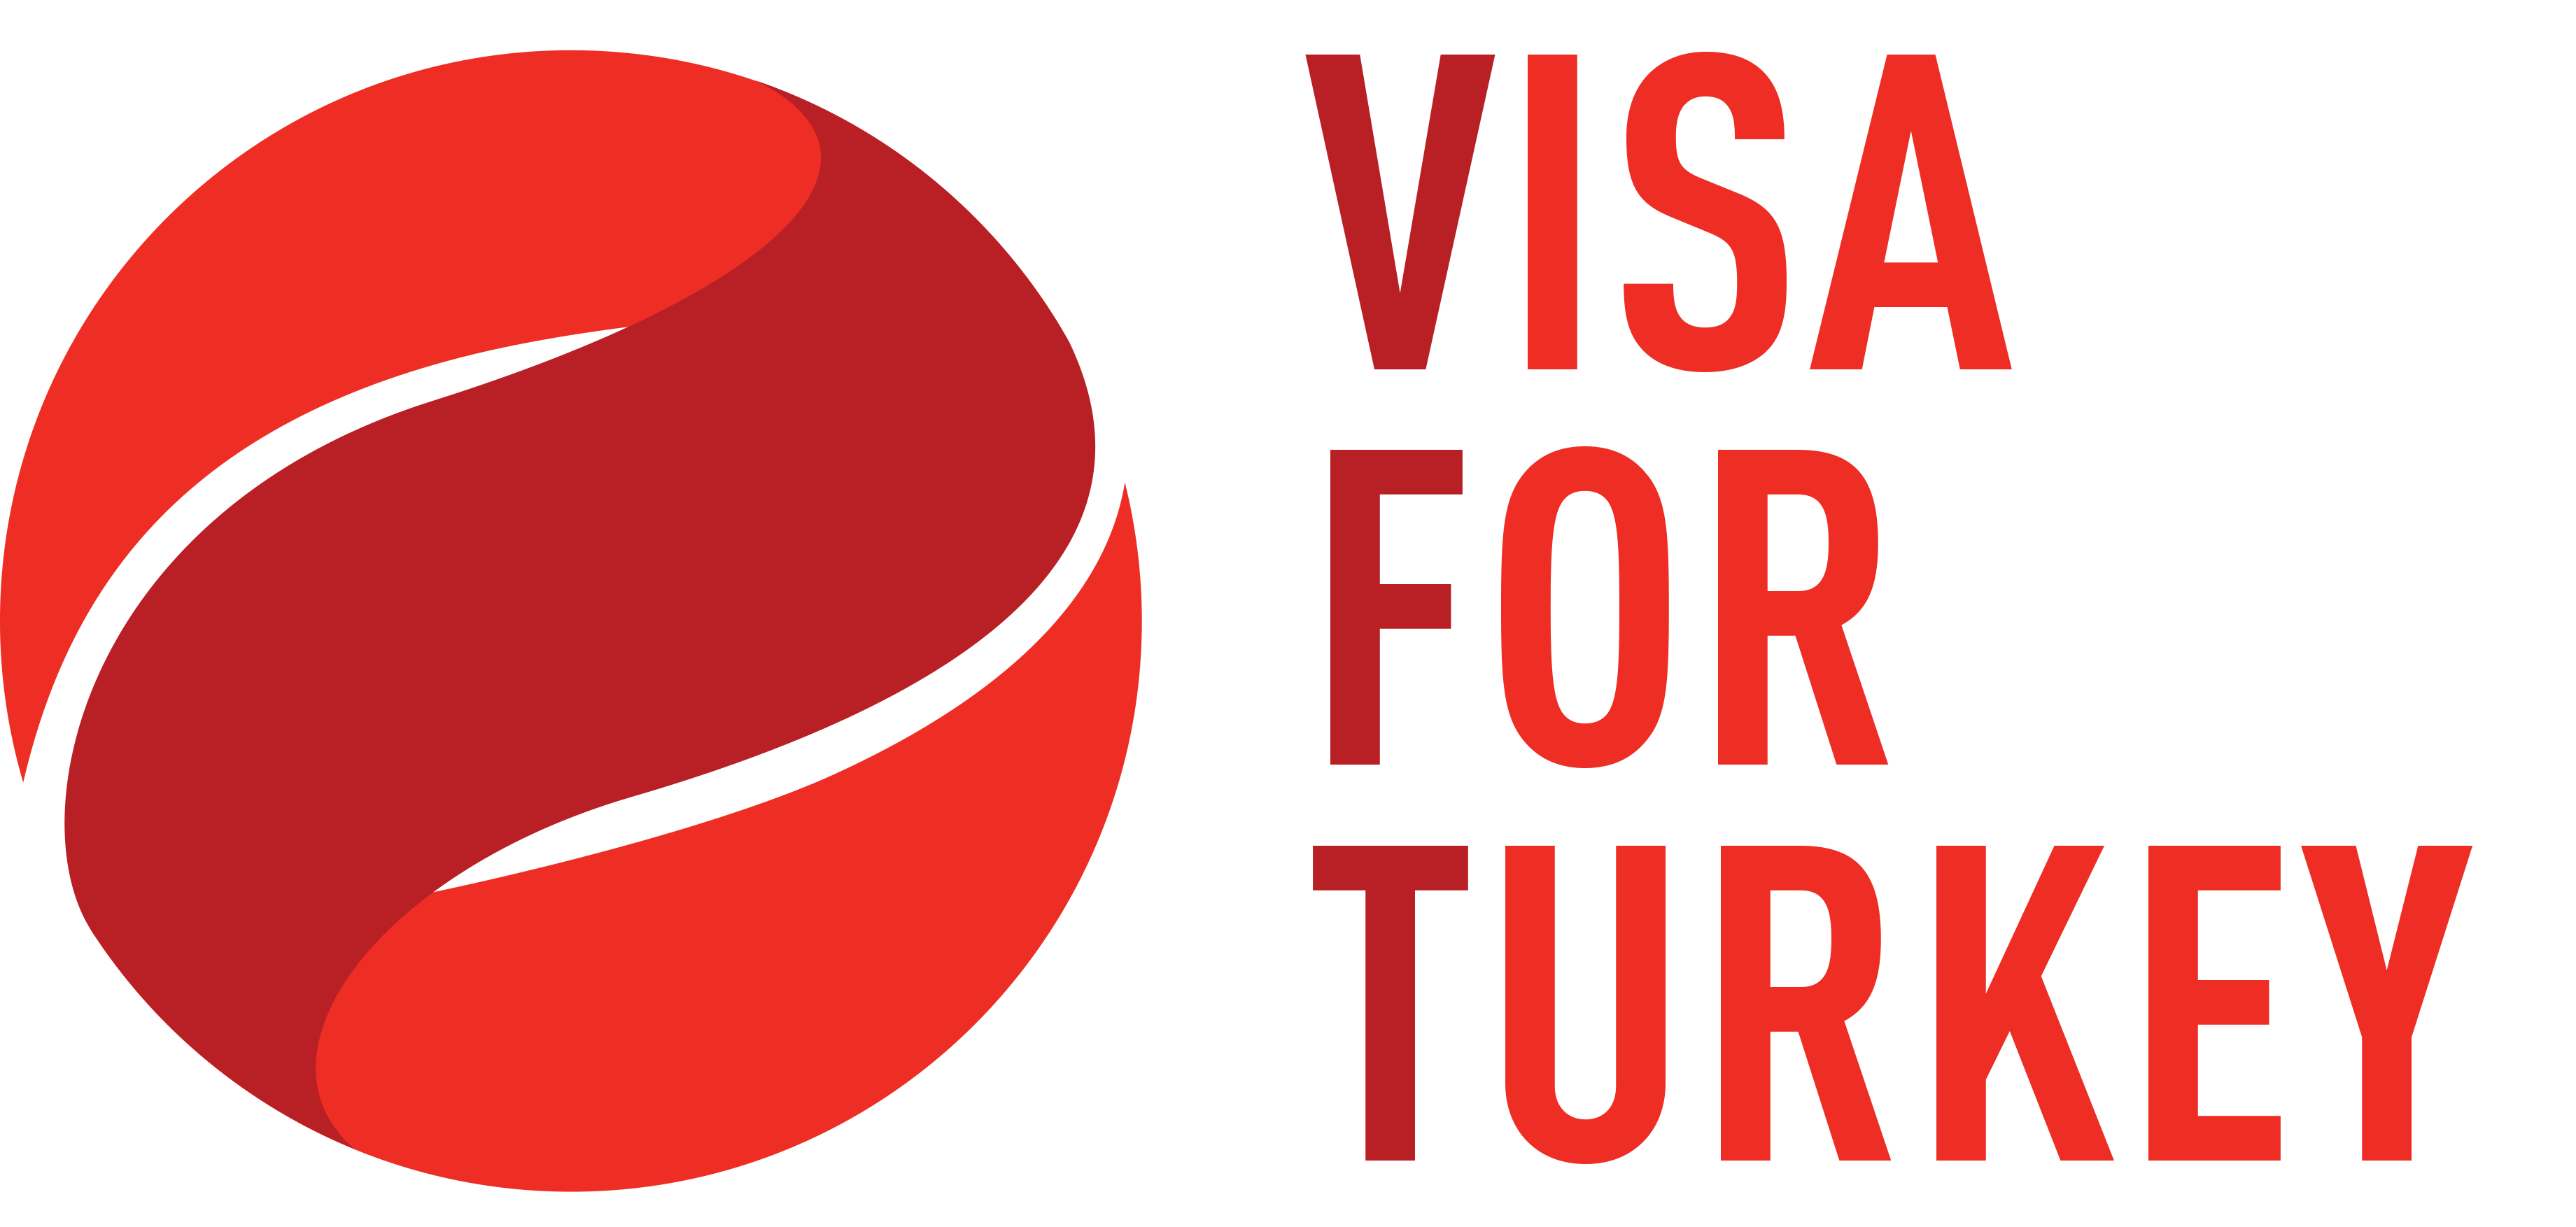 travel insurance for turkey visa online